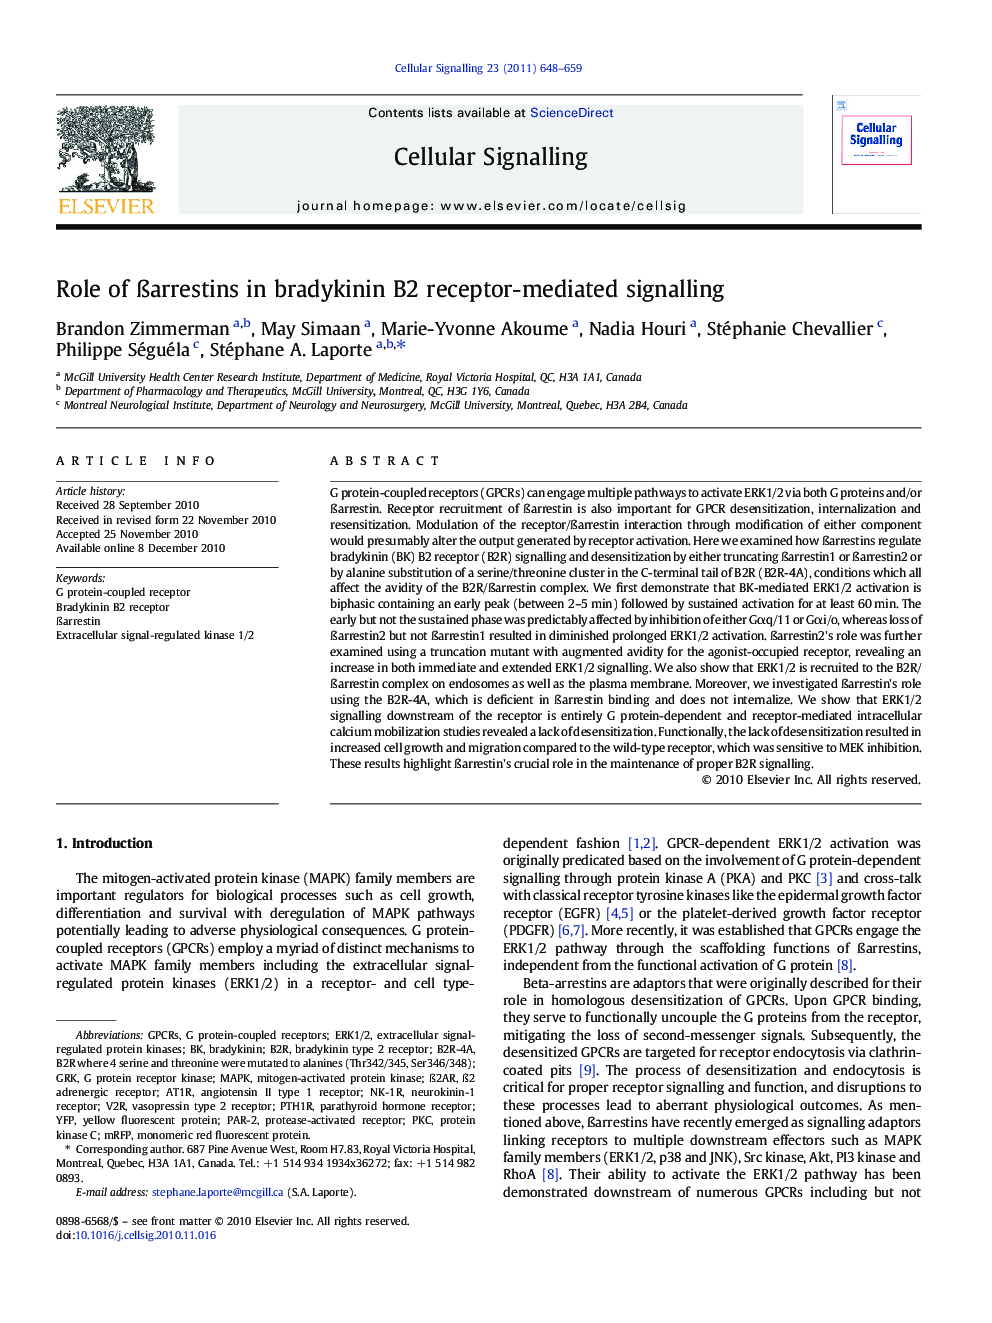 Role of Ãarrestins in bradykinin B2 receptor-mediated signalling